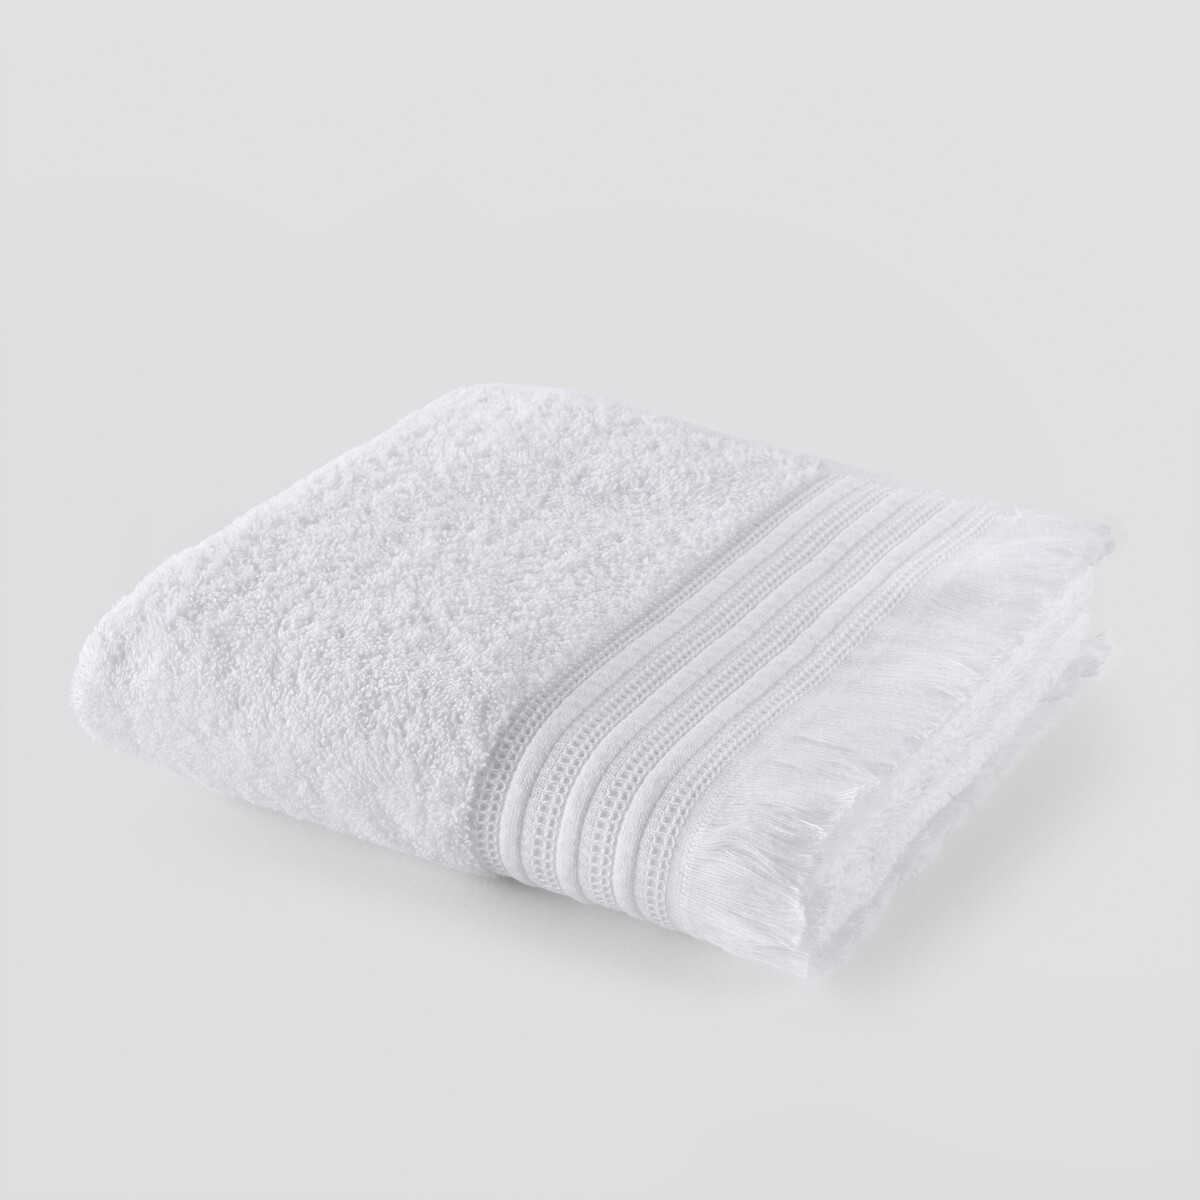 Полотенце LaRedoute Банное из махровой ткани 430г Cabourg 50 x 100 см белый, размер 50 x 100 см - фото 1